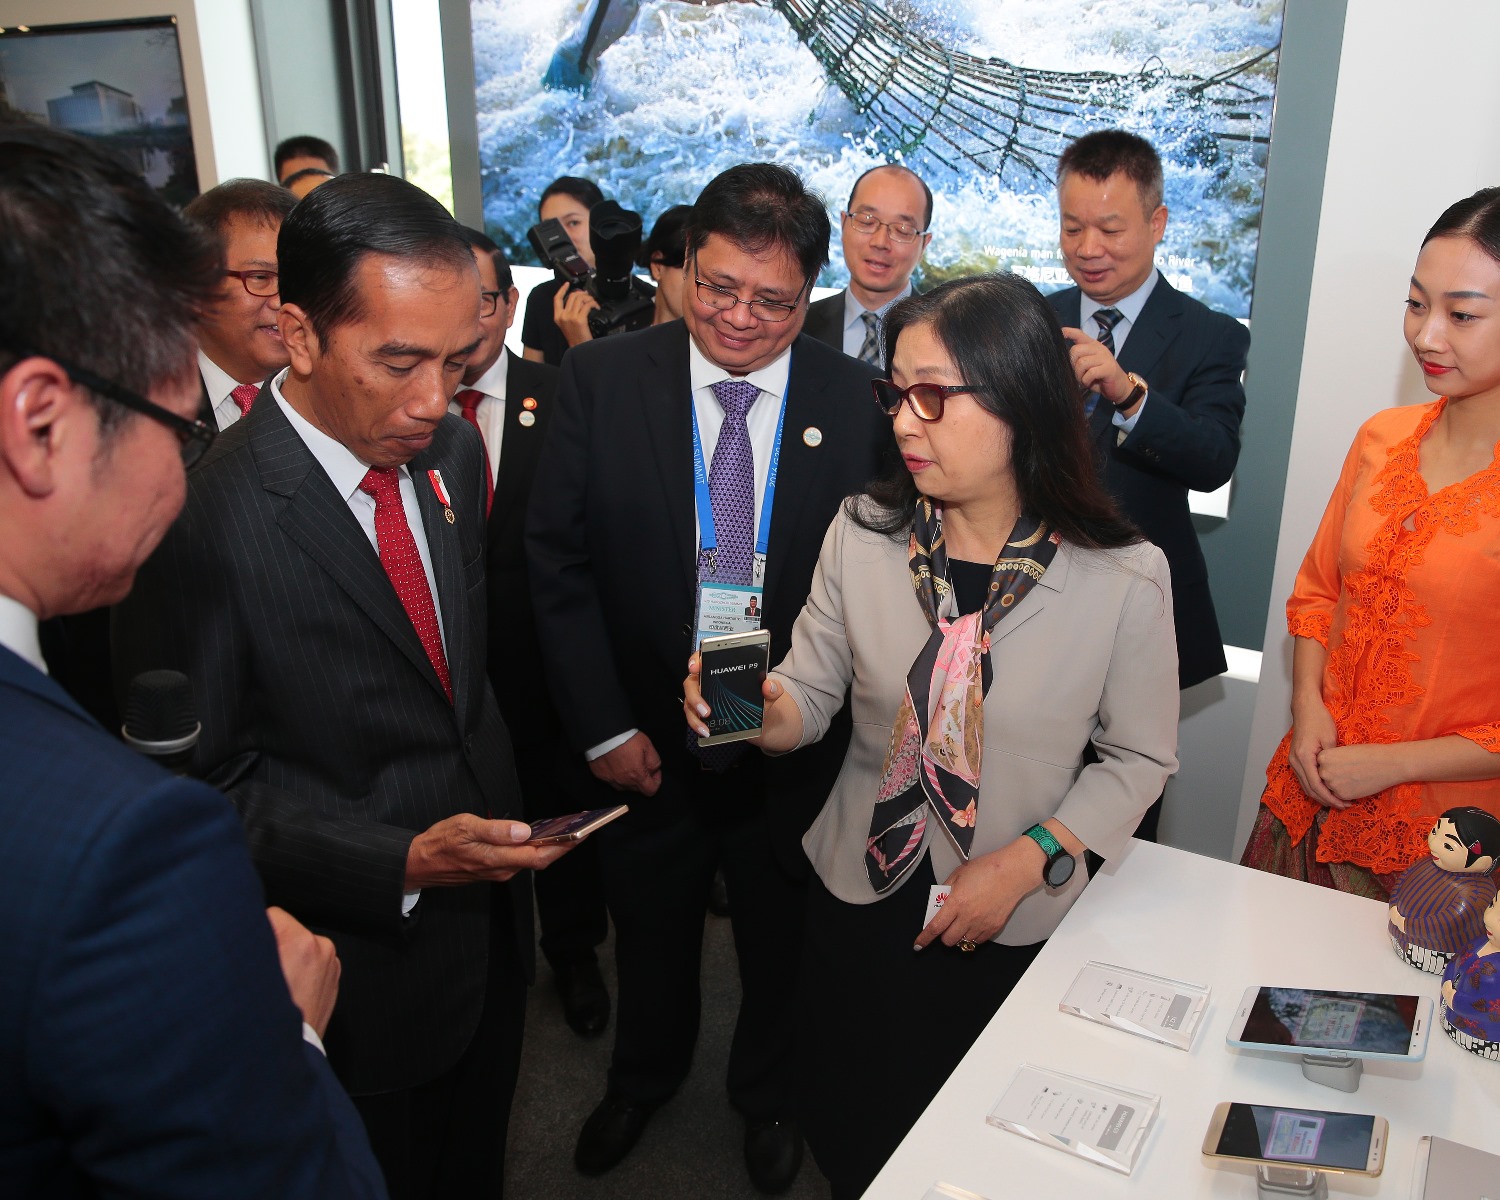 Chairwoman Huawei, Sun Yafang, menjelaskan teknologi dan fitur-fitur terbaru Huawei P9 kepada Presiden Republik Indonesia, Joko Widodo, yang sedang berkunjung ke Hangzhou, Tiongkok dalam rangka G20 Summit